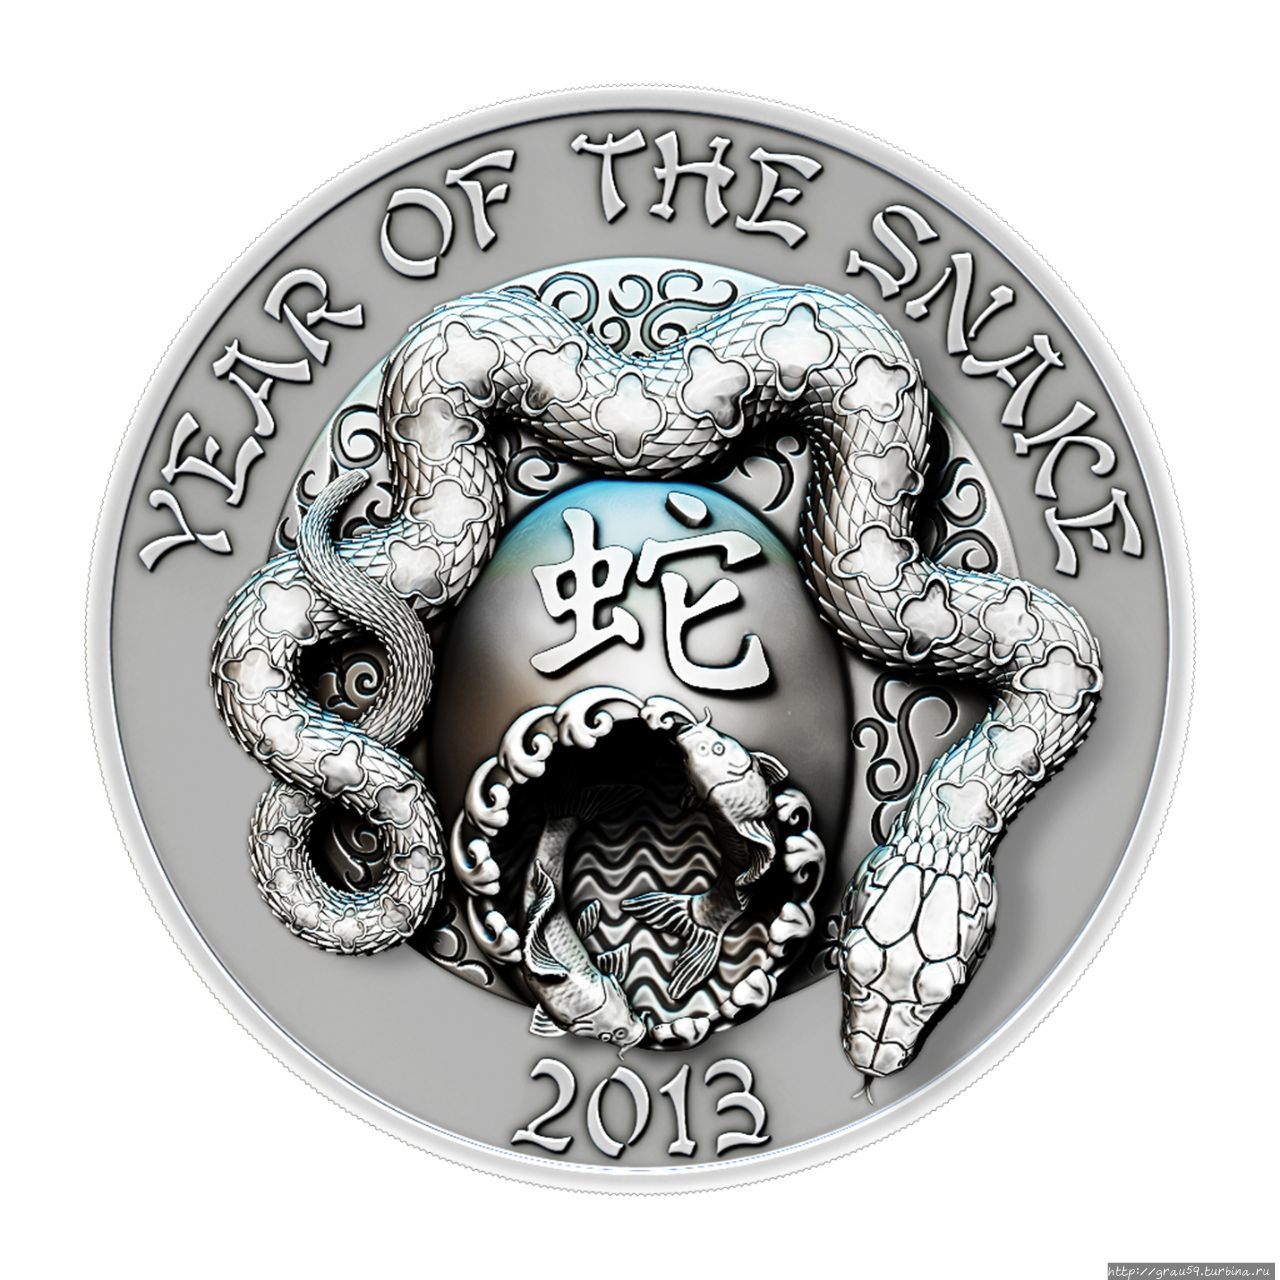 Гороскоп лошадь змея. Год змеи 2013 монета Francs. Набор монет 2013 год змеи. Монета Руанда 500 франков год змеи 2009. Набор монет год змеи.